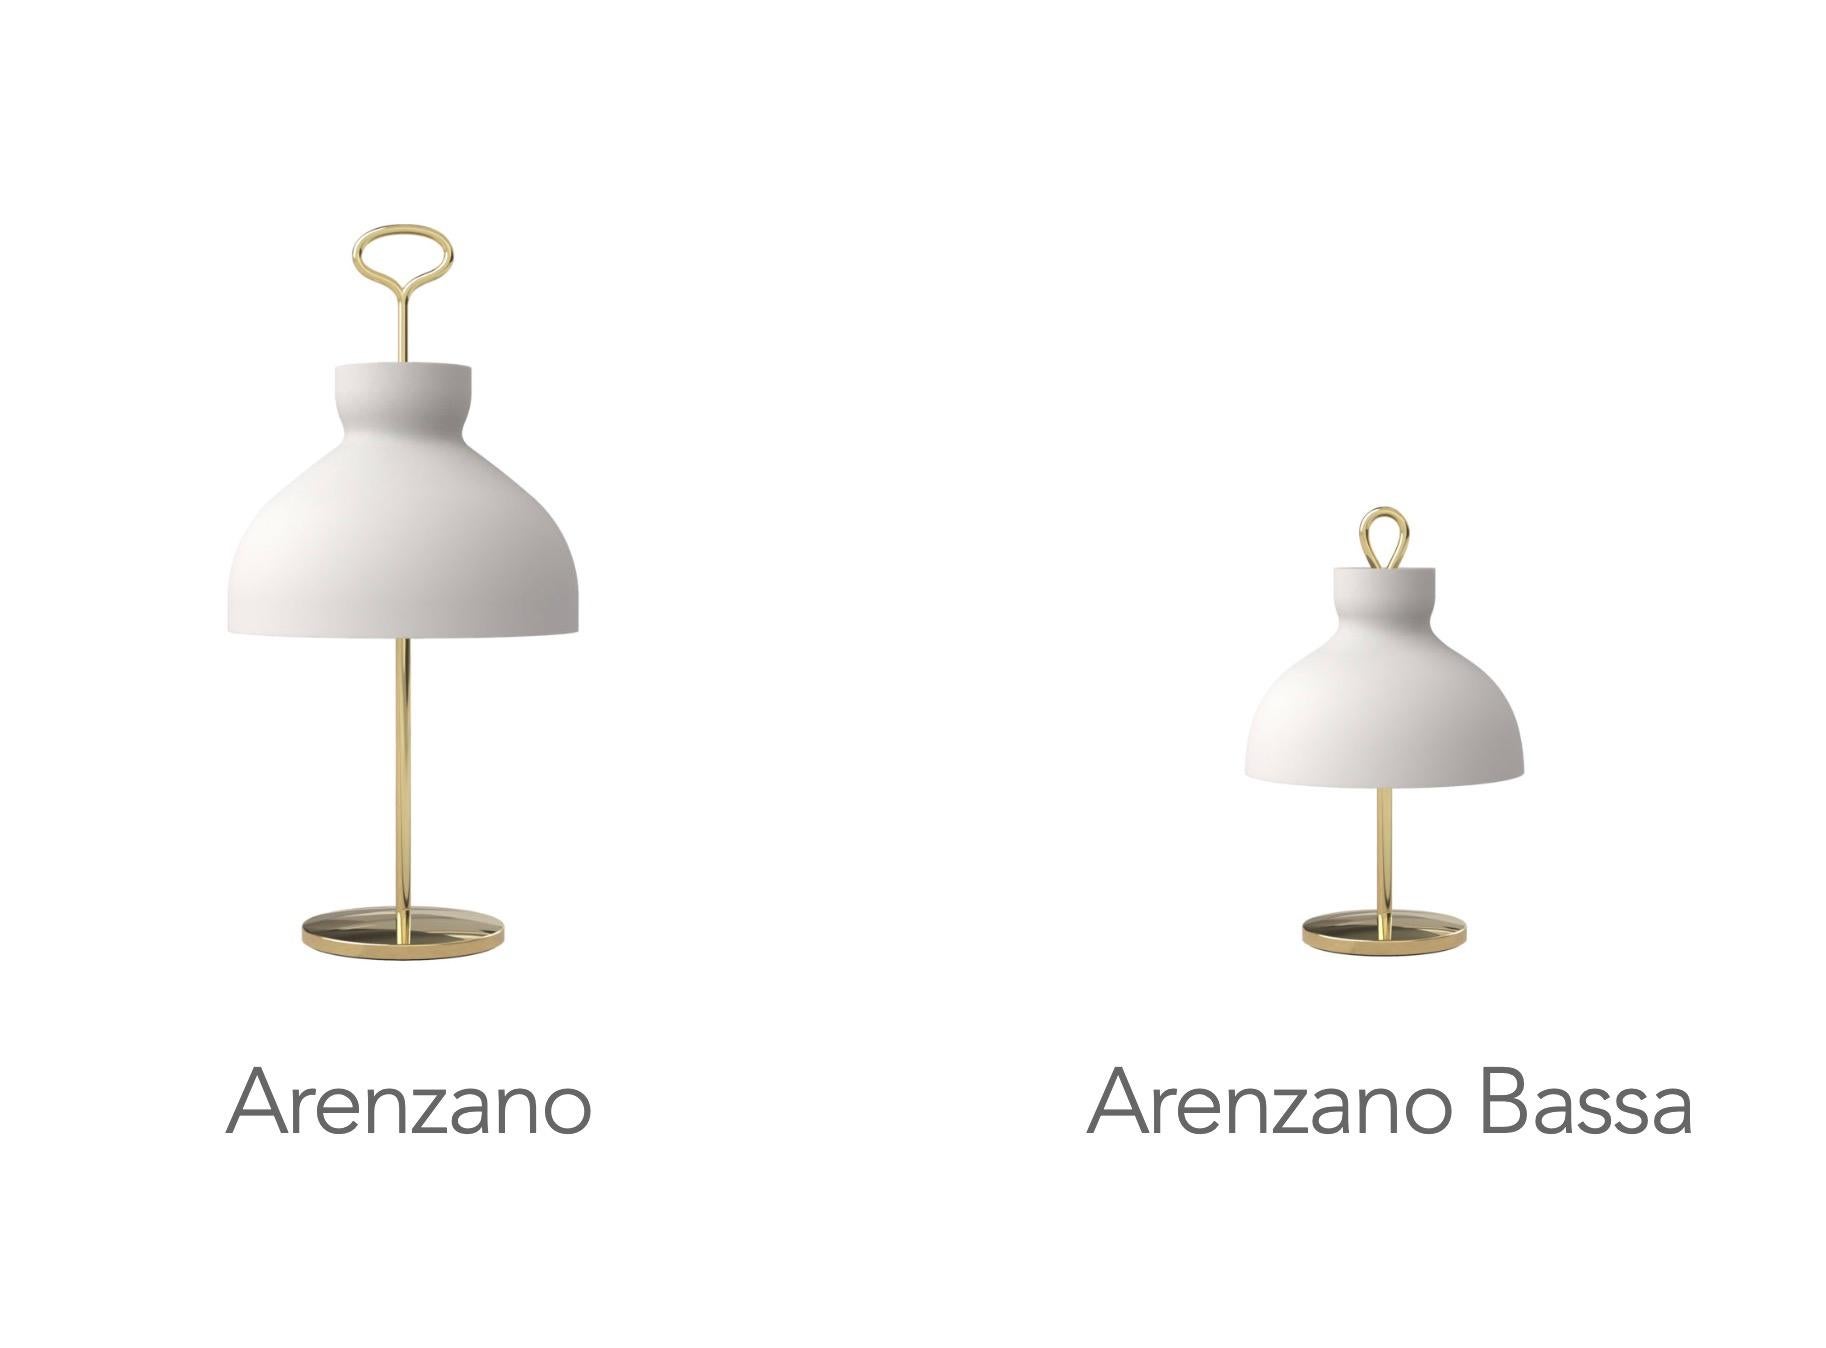 Large Ignazio Gardella 'Arenzano' Table Lamp in Brass and Glass for Tato Italia For Sale 7